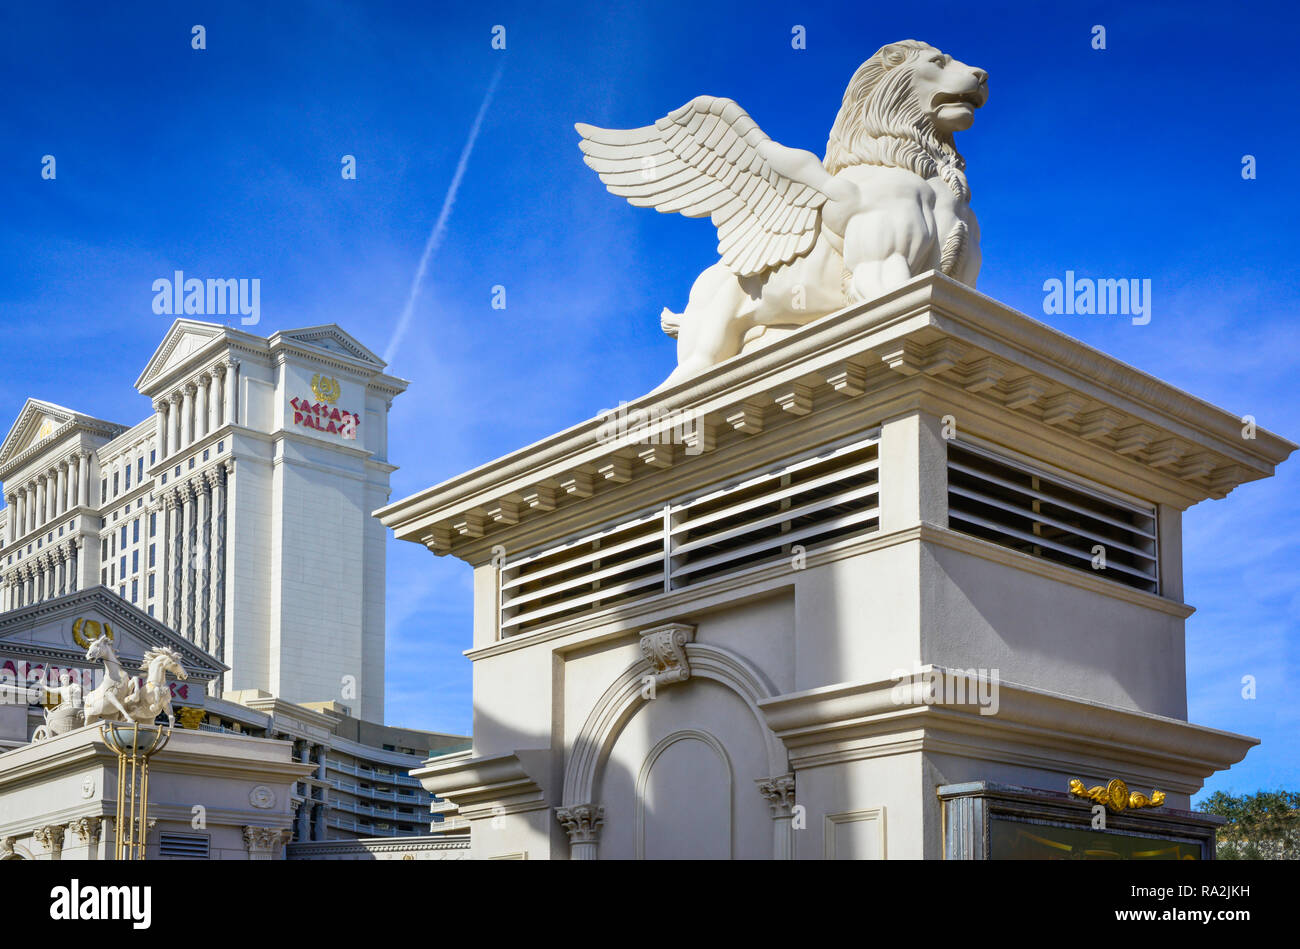 La statuaire lion ailé à l'entrée de l'hôtel et casino à thème Romain, Caesars Palace à Las Vegas, NV contre le ciel bleu Banque D'Images